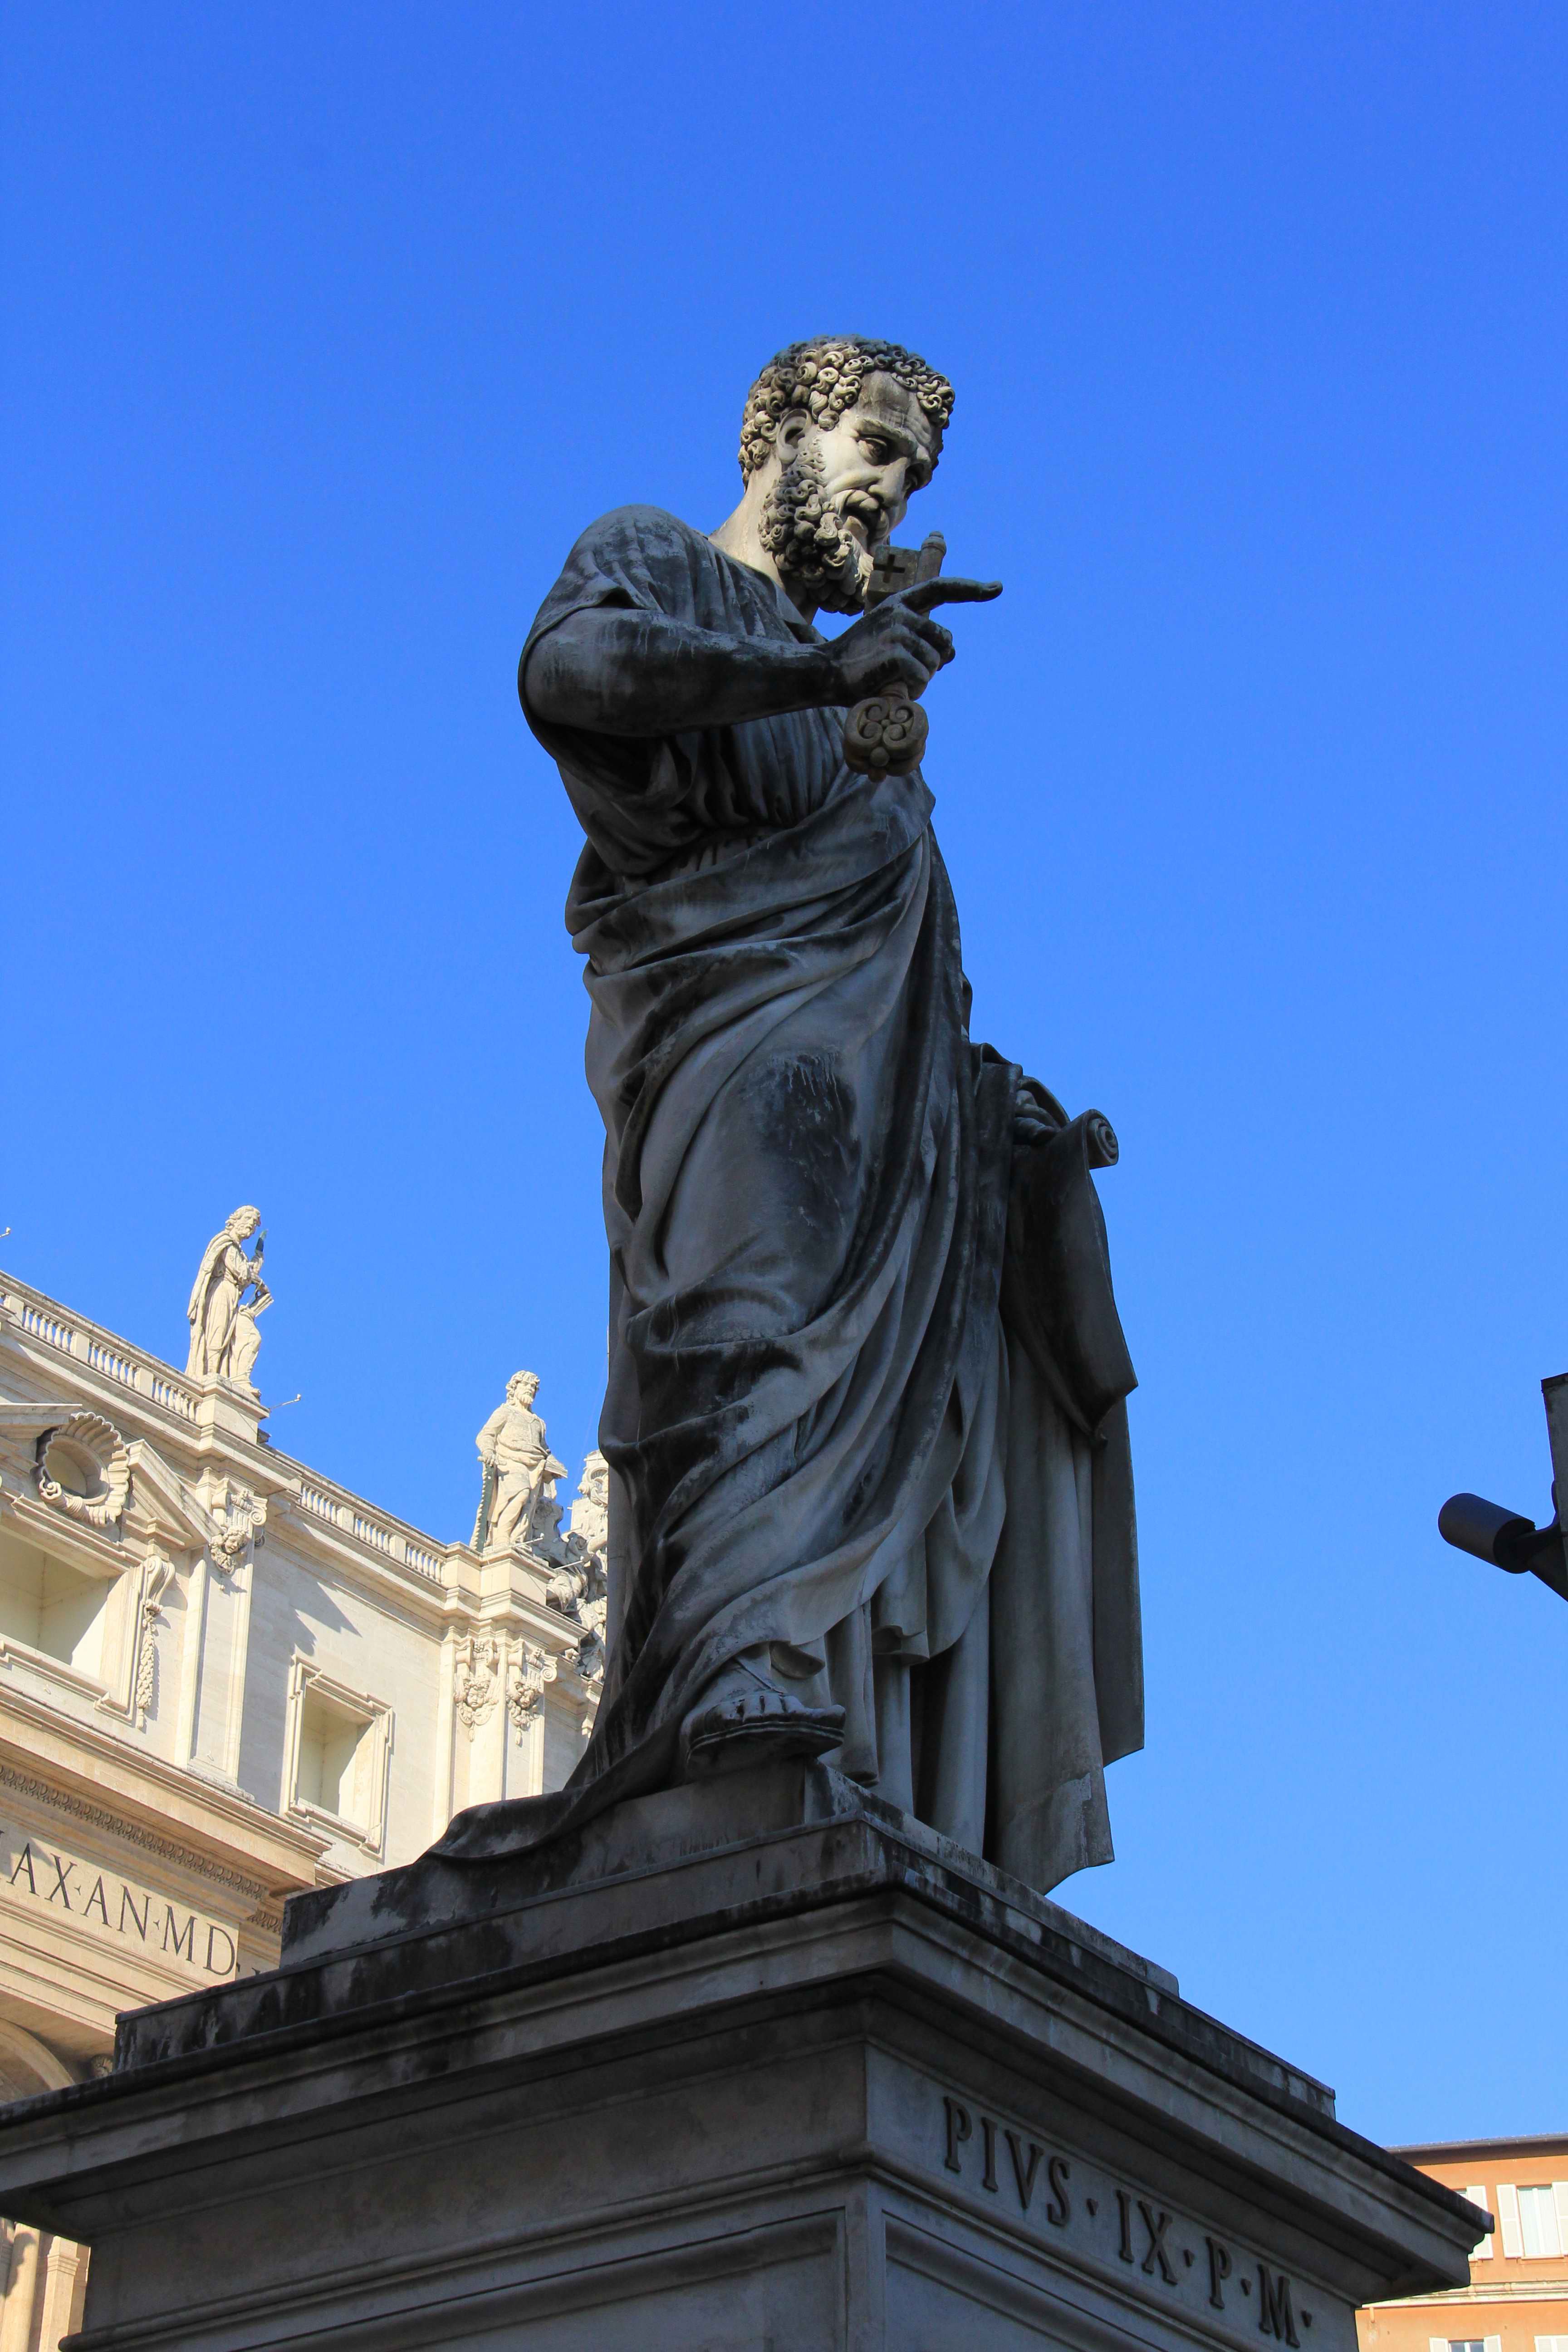 身后这座右手拿著宝剑的是圣彼得,另一座右手拿著钥匙的雕像是圣保罗